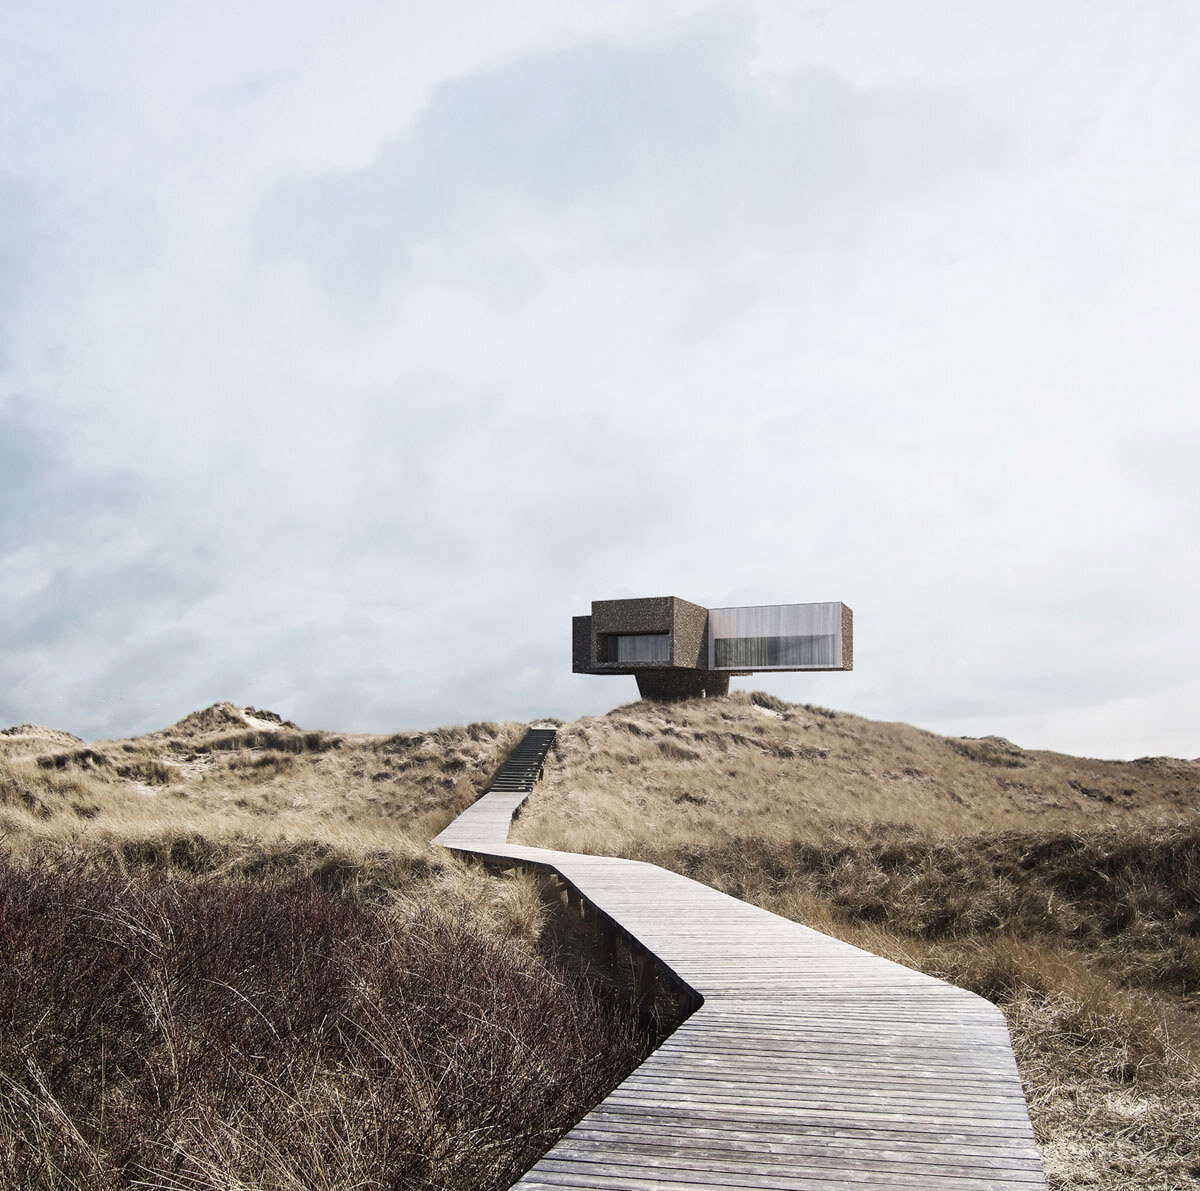 Studio-Viktor-Sørless-Dune House-Visual Atelier 8-Architecture-3.jpg